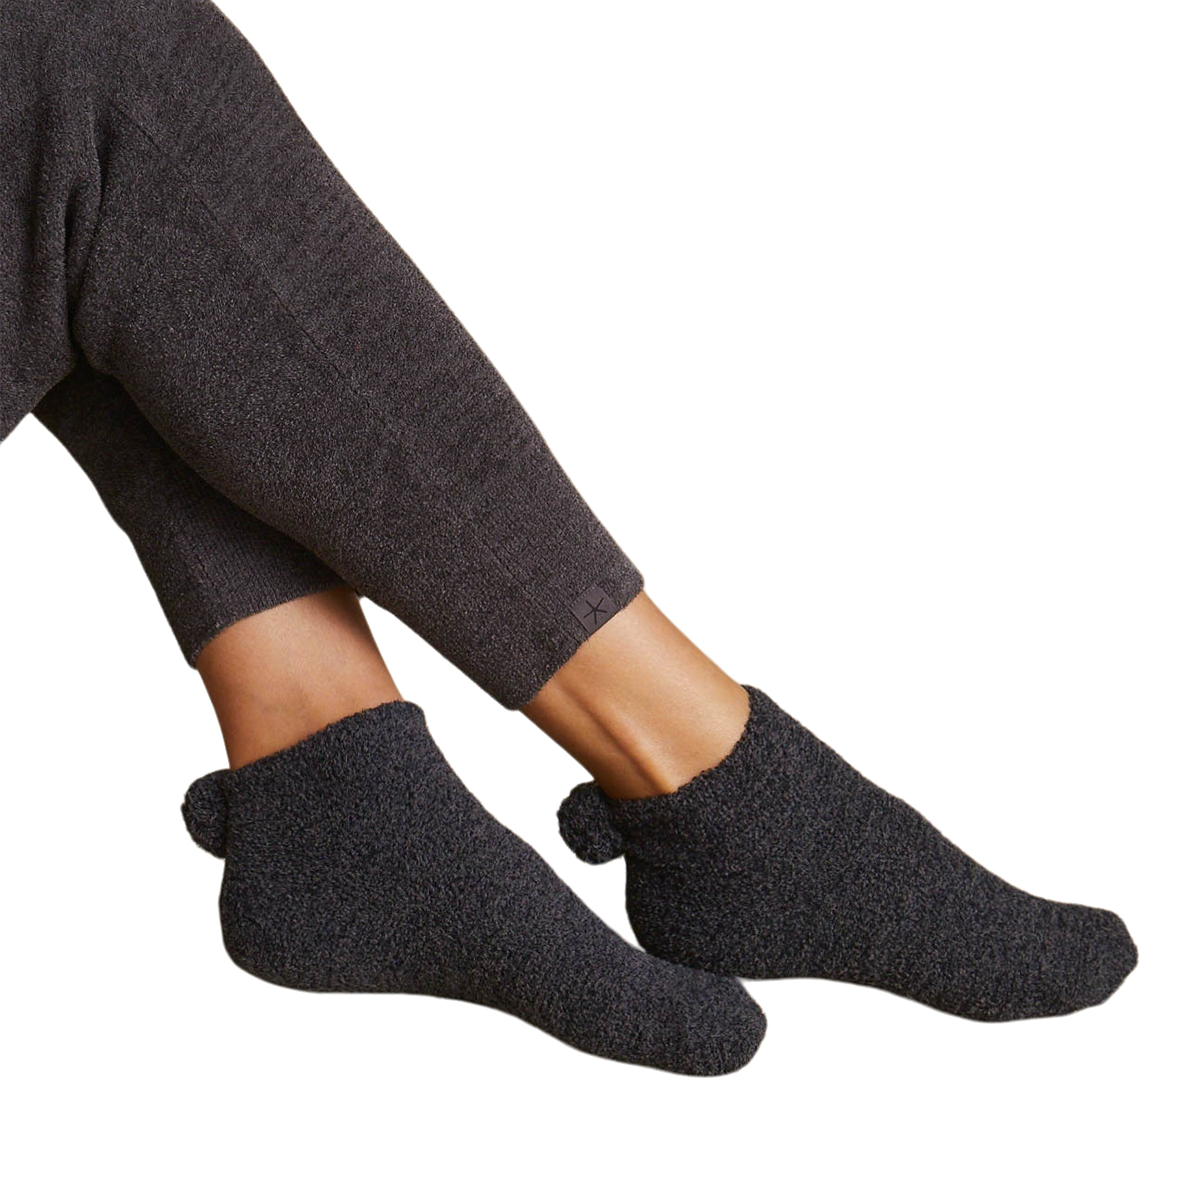 Pom Ankle Socks